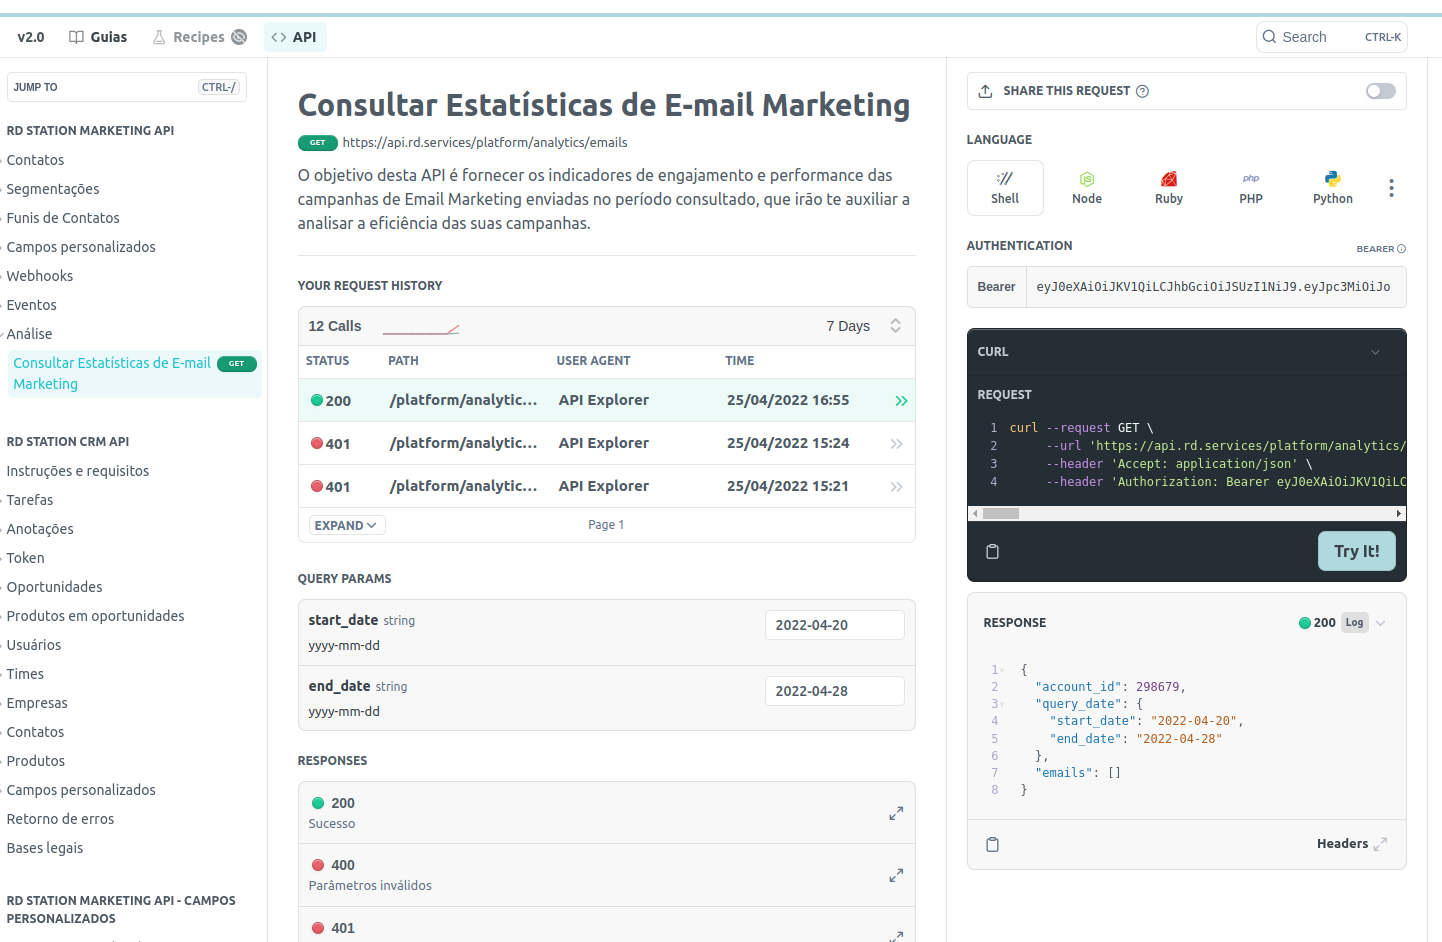 Imagem mostrando o uso da interface do portal de desenvolvedor para consultar Estatísticas de E-mail Marketing